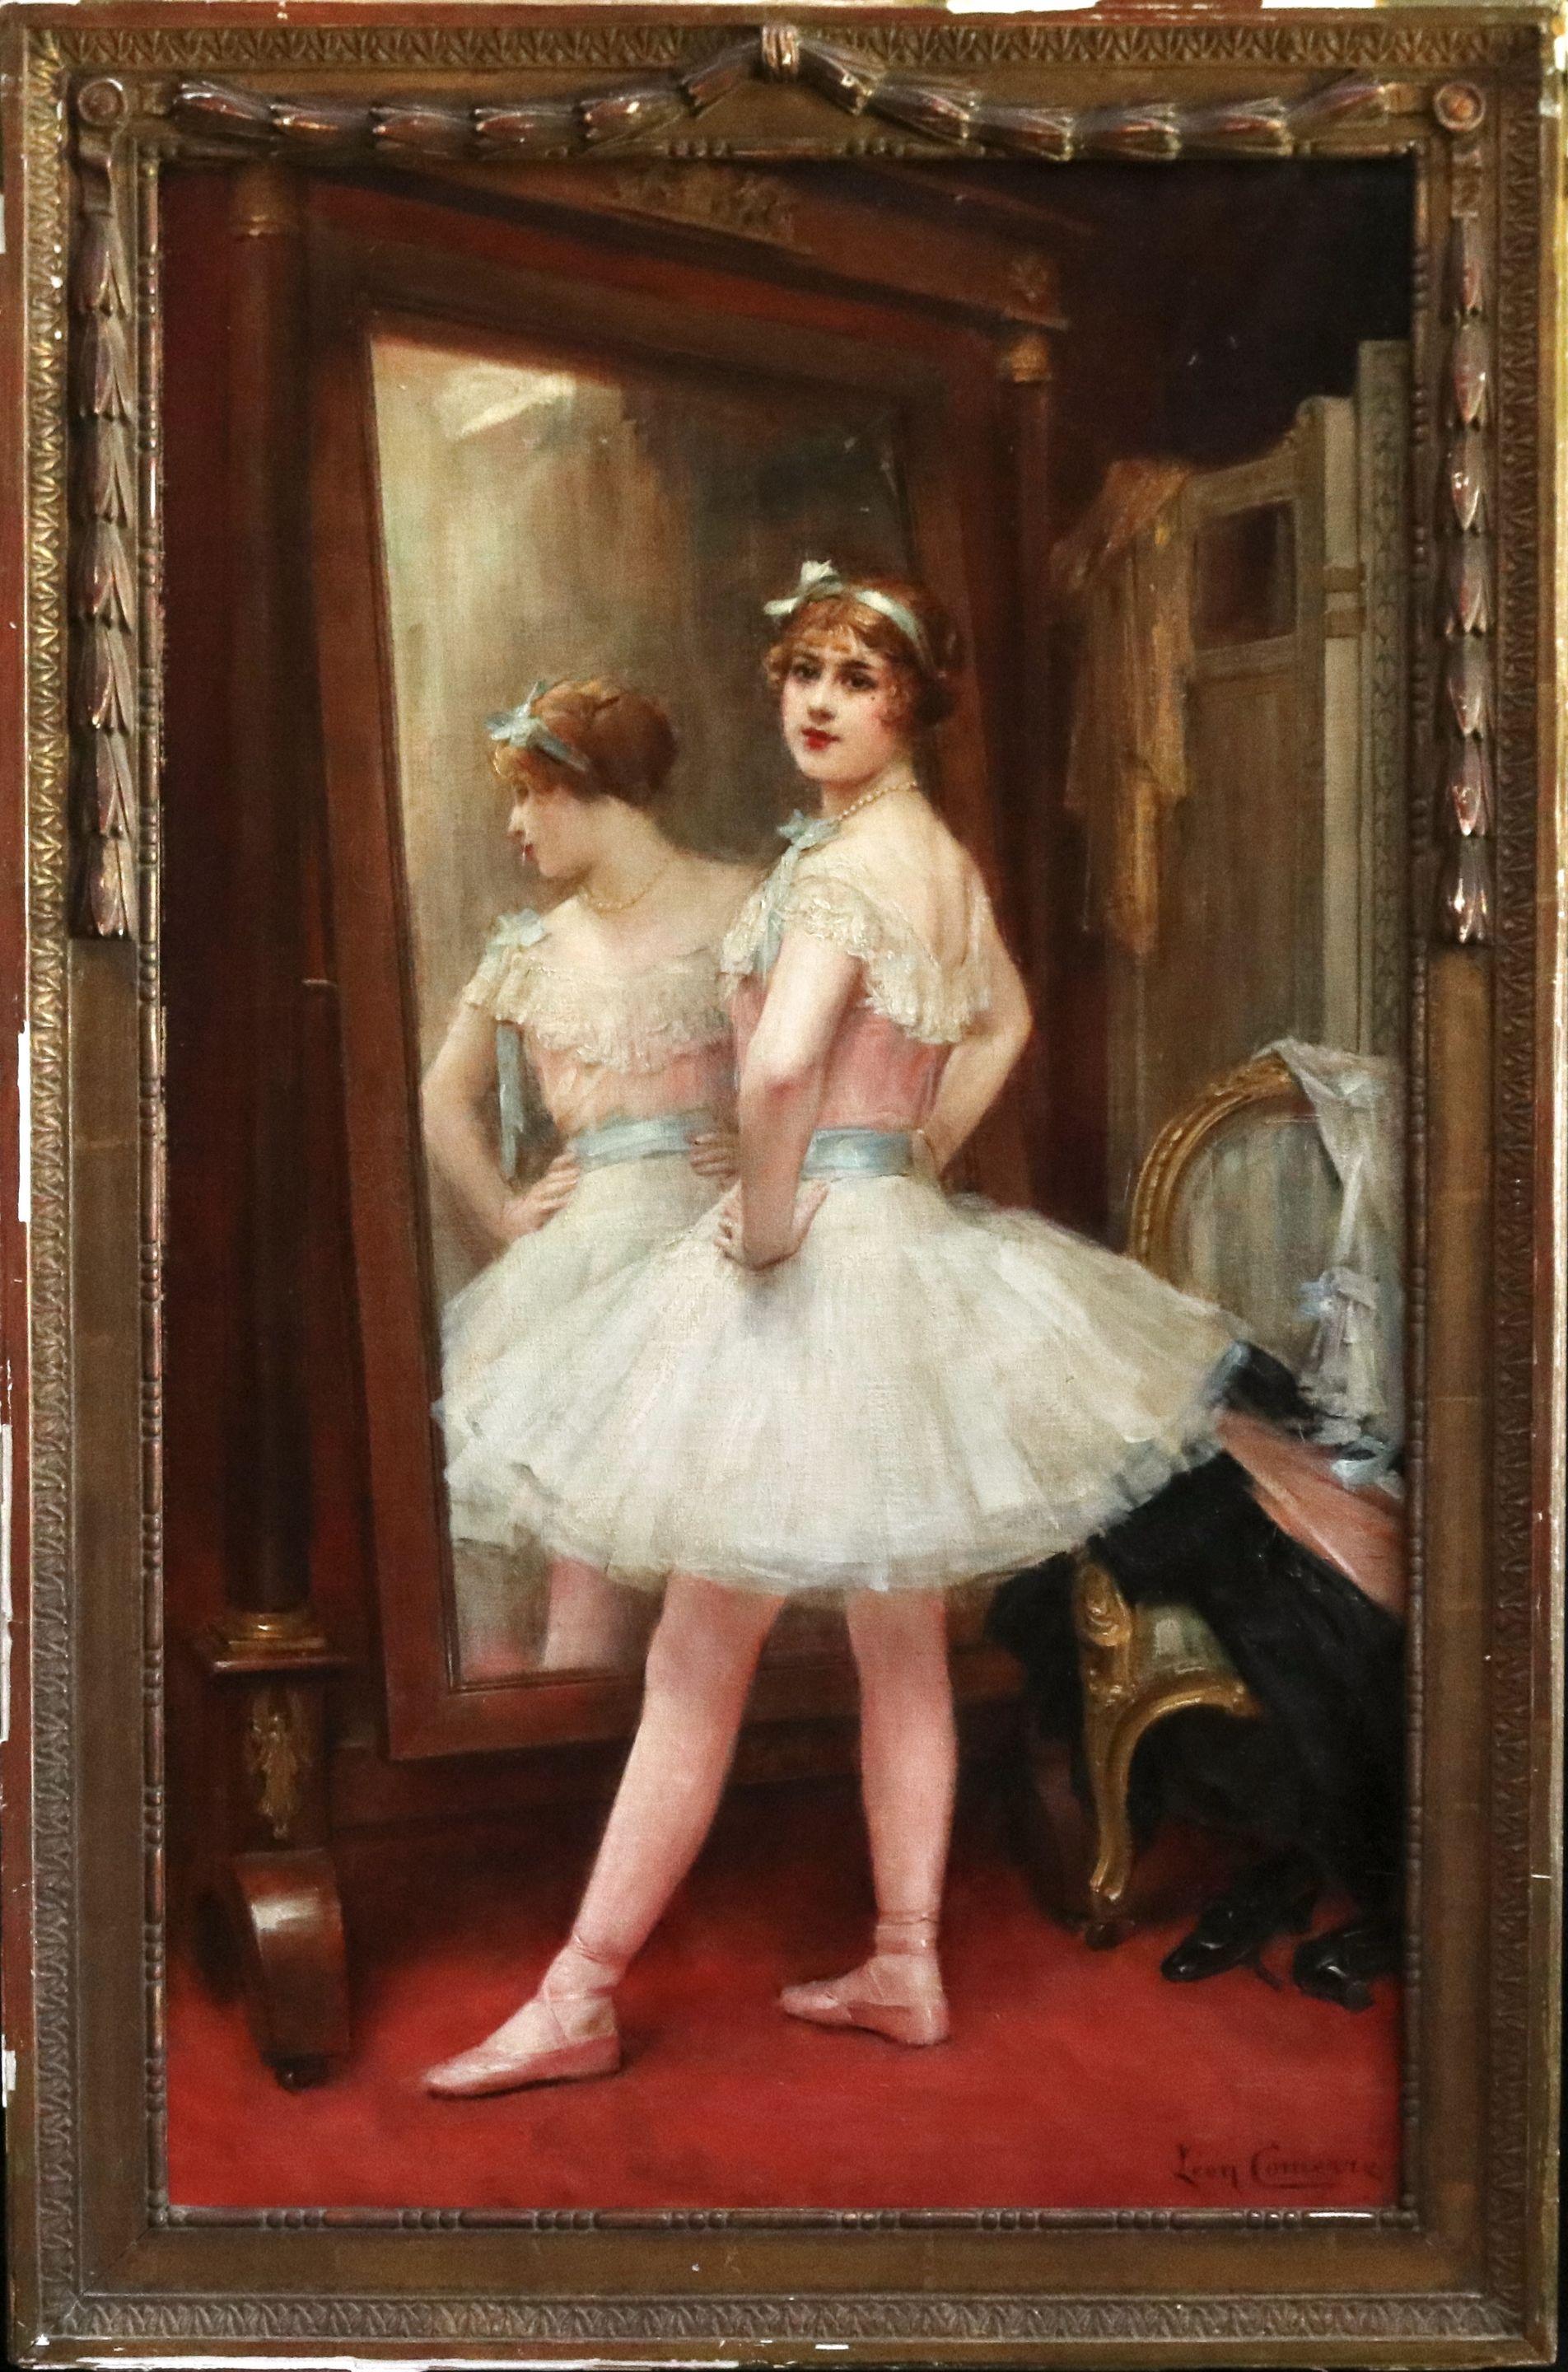 La Danseuse - 19th Century Oil, Figure of Dancer in Interior by Leon Comerre - Painting by Léon François Comerre